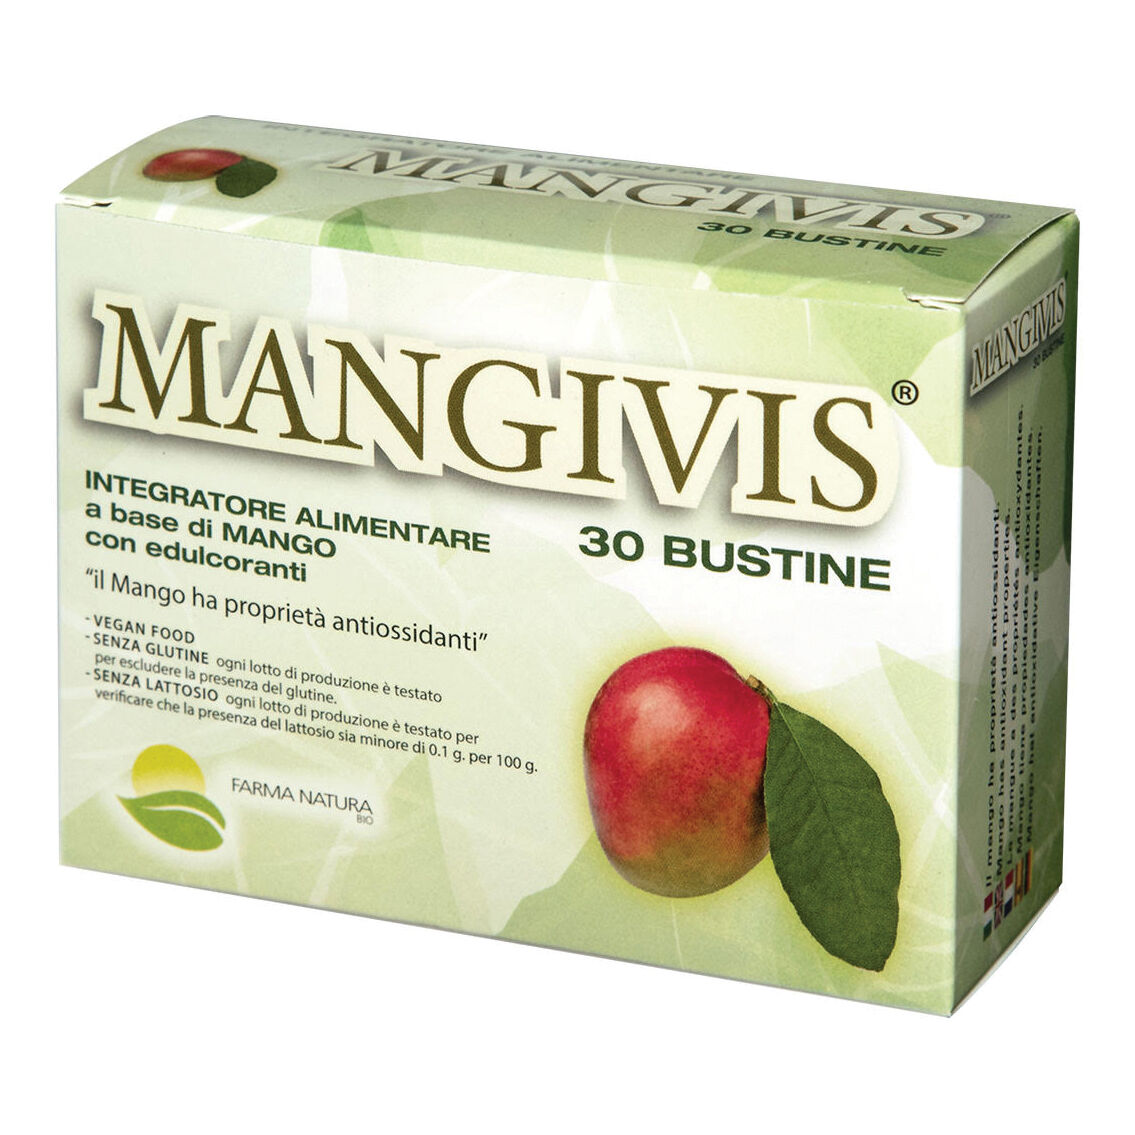 BIO + Mangivis 30 bustine